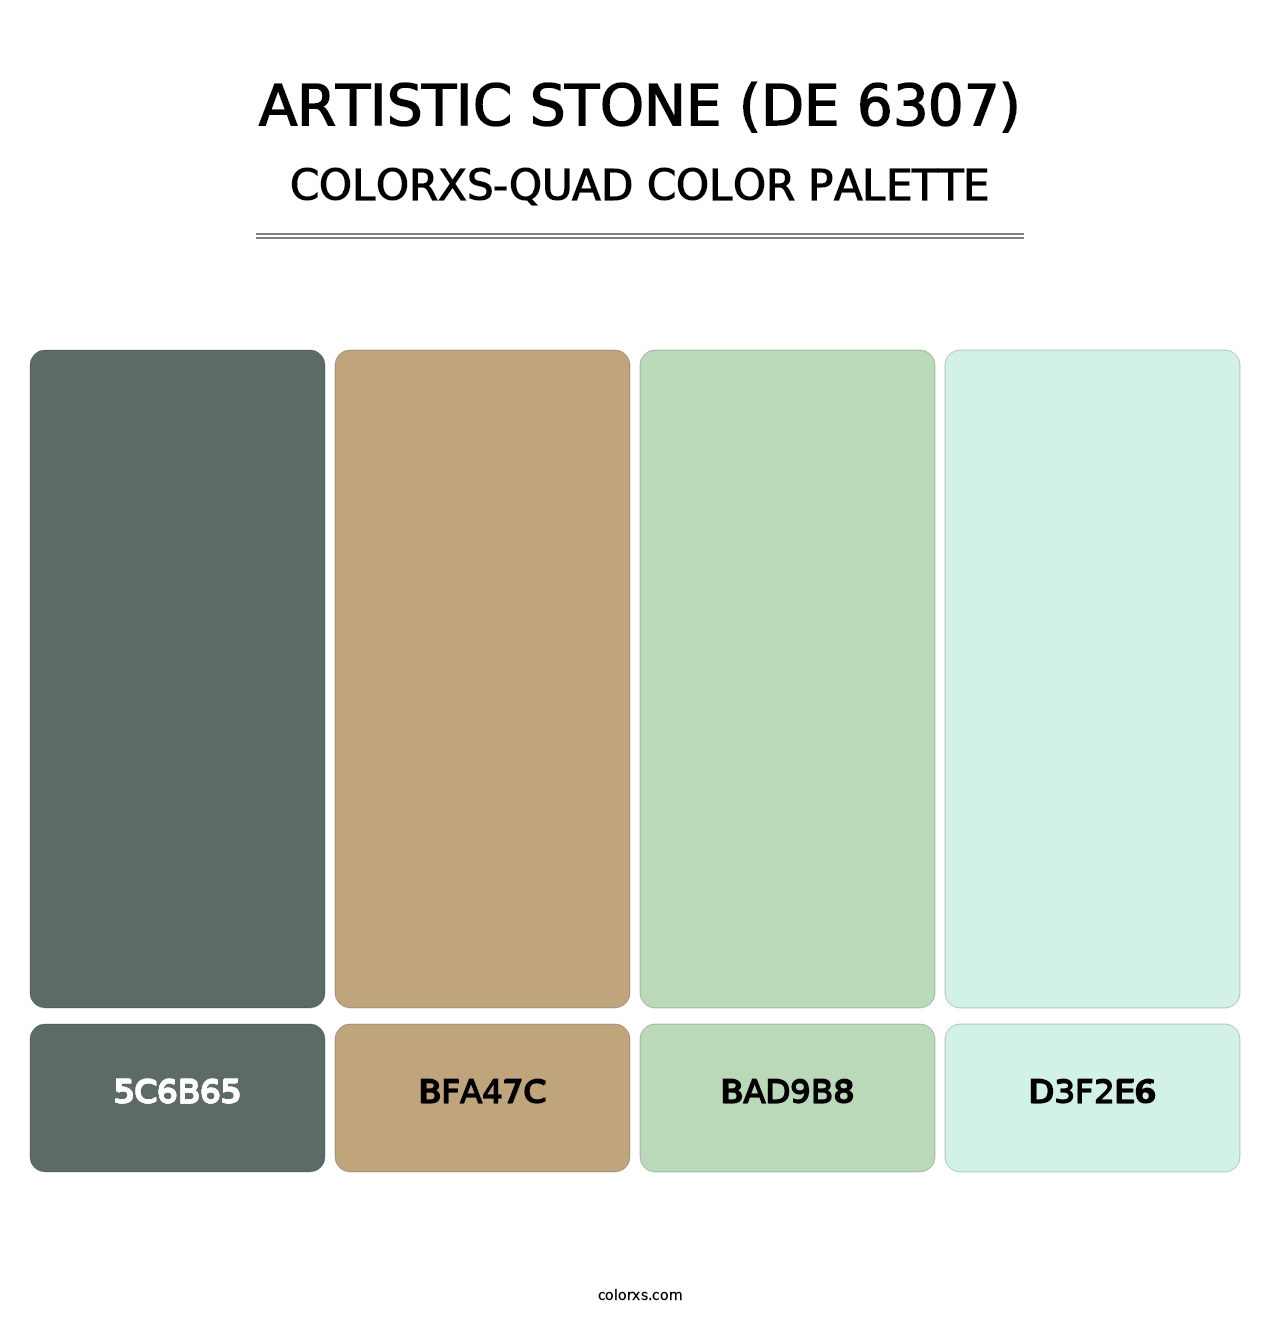 Artistic Stone (DE 6307) - Colorxs Quad Palette